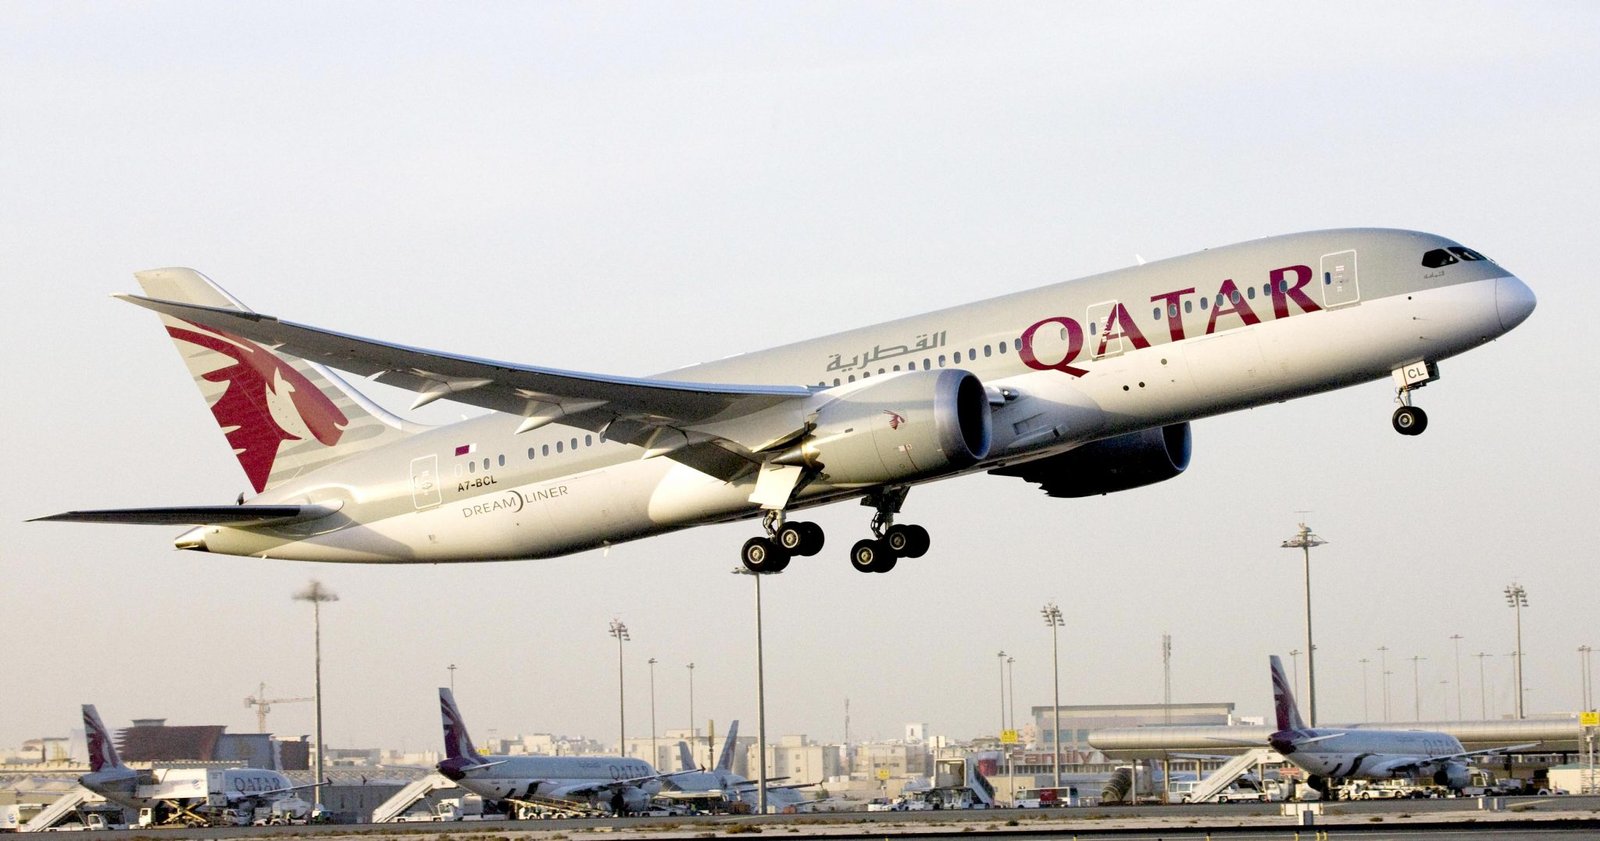 avion de qatar airways despegando hacia destinos